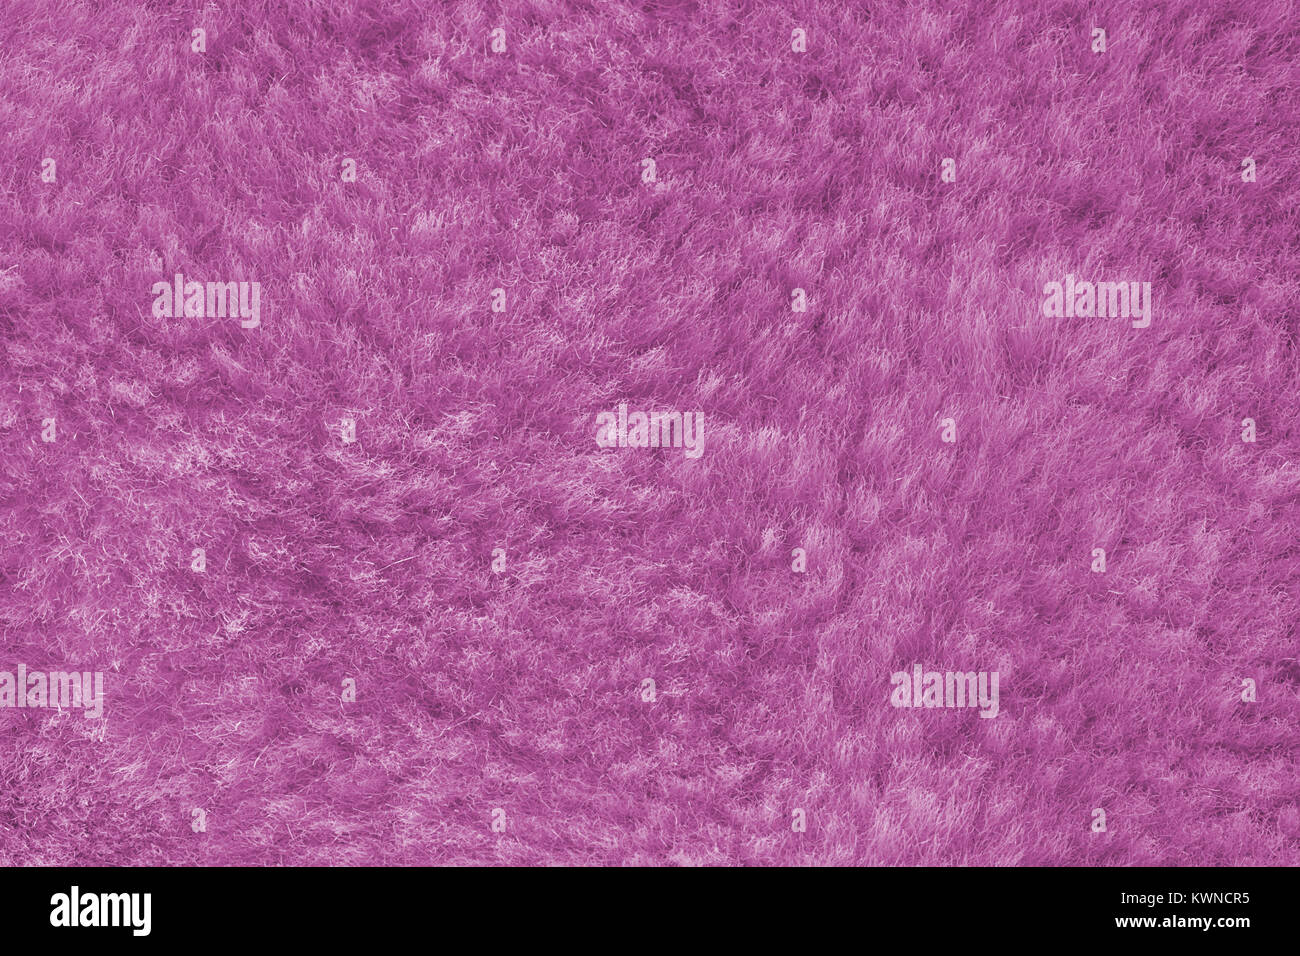 pink shaggy skin of an animal closeup texture, Fur Texture. Stock Photo